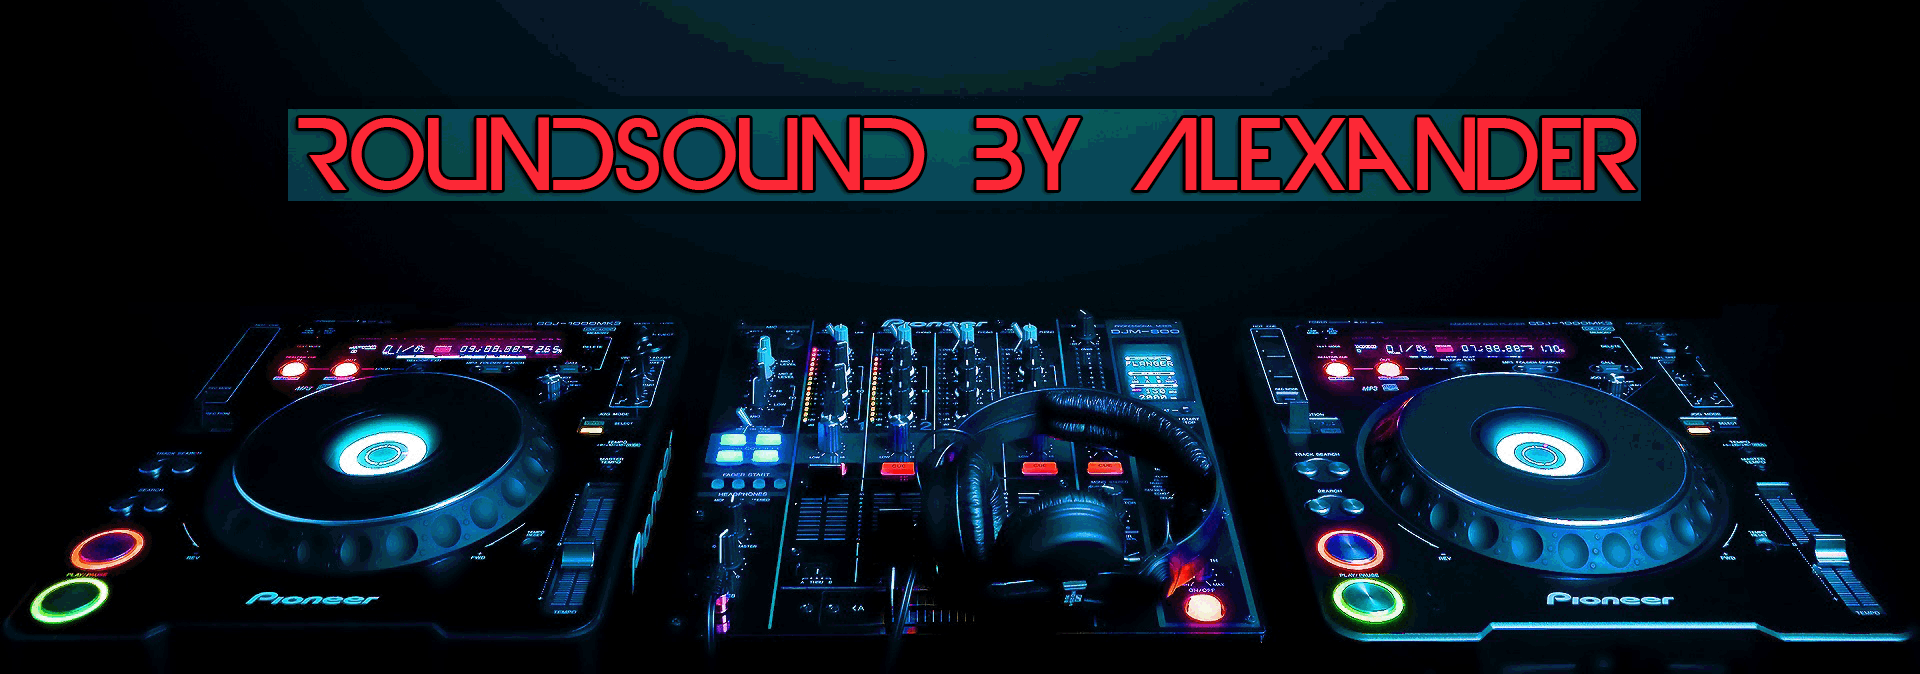 Roundsound by alexander